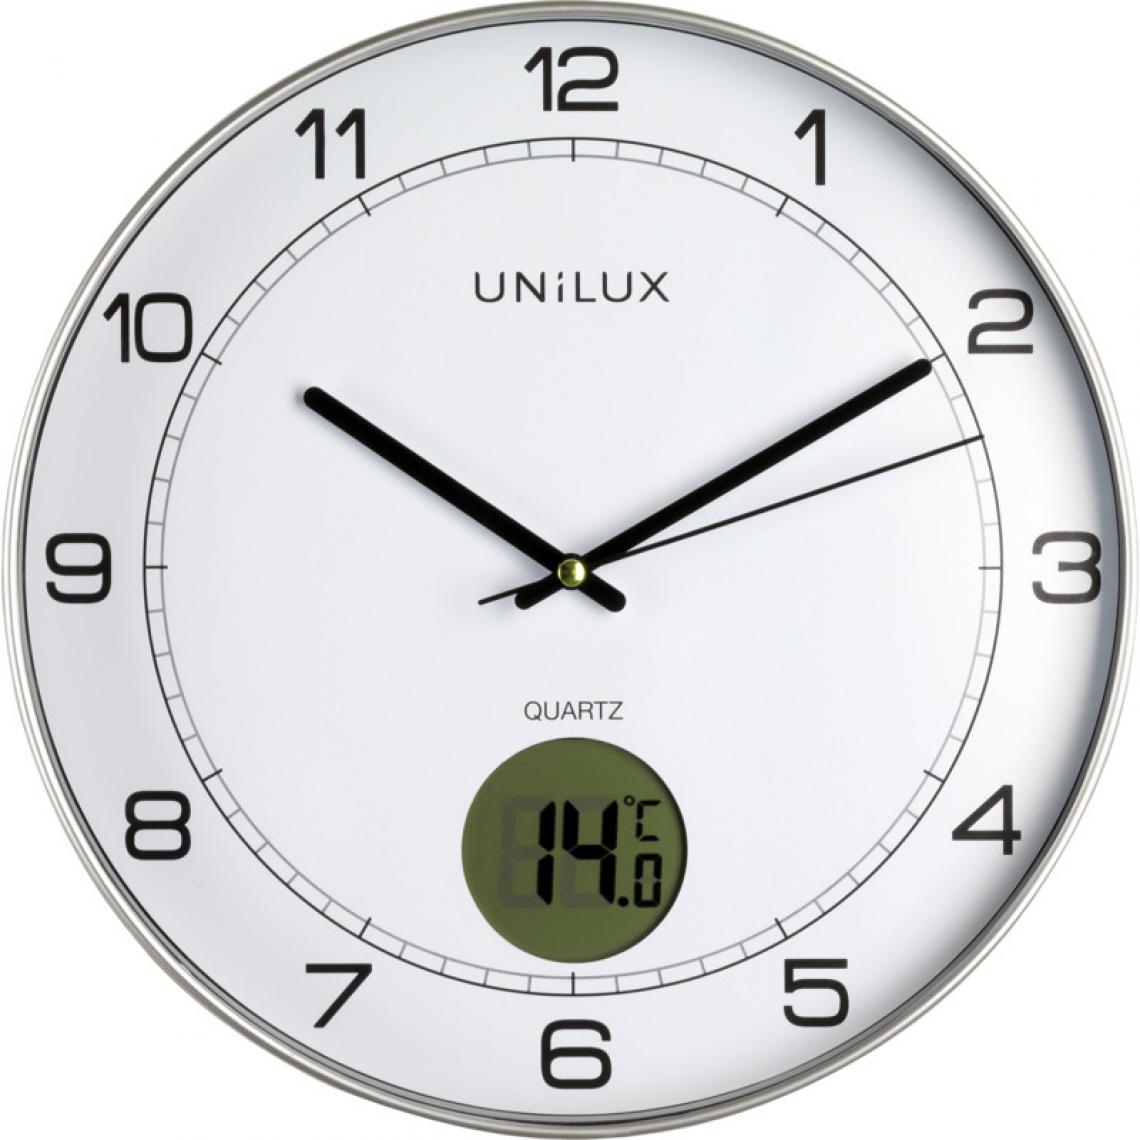 Unilux - UNiLUX Horloge murale à quartz 'TEMPUS', diamètre: 300 mm () - Télérupteurs, minuteries et horloges